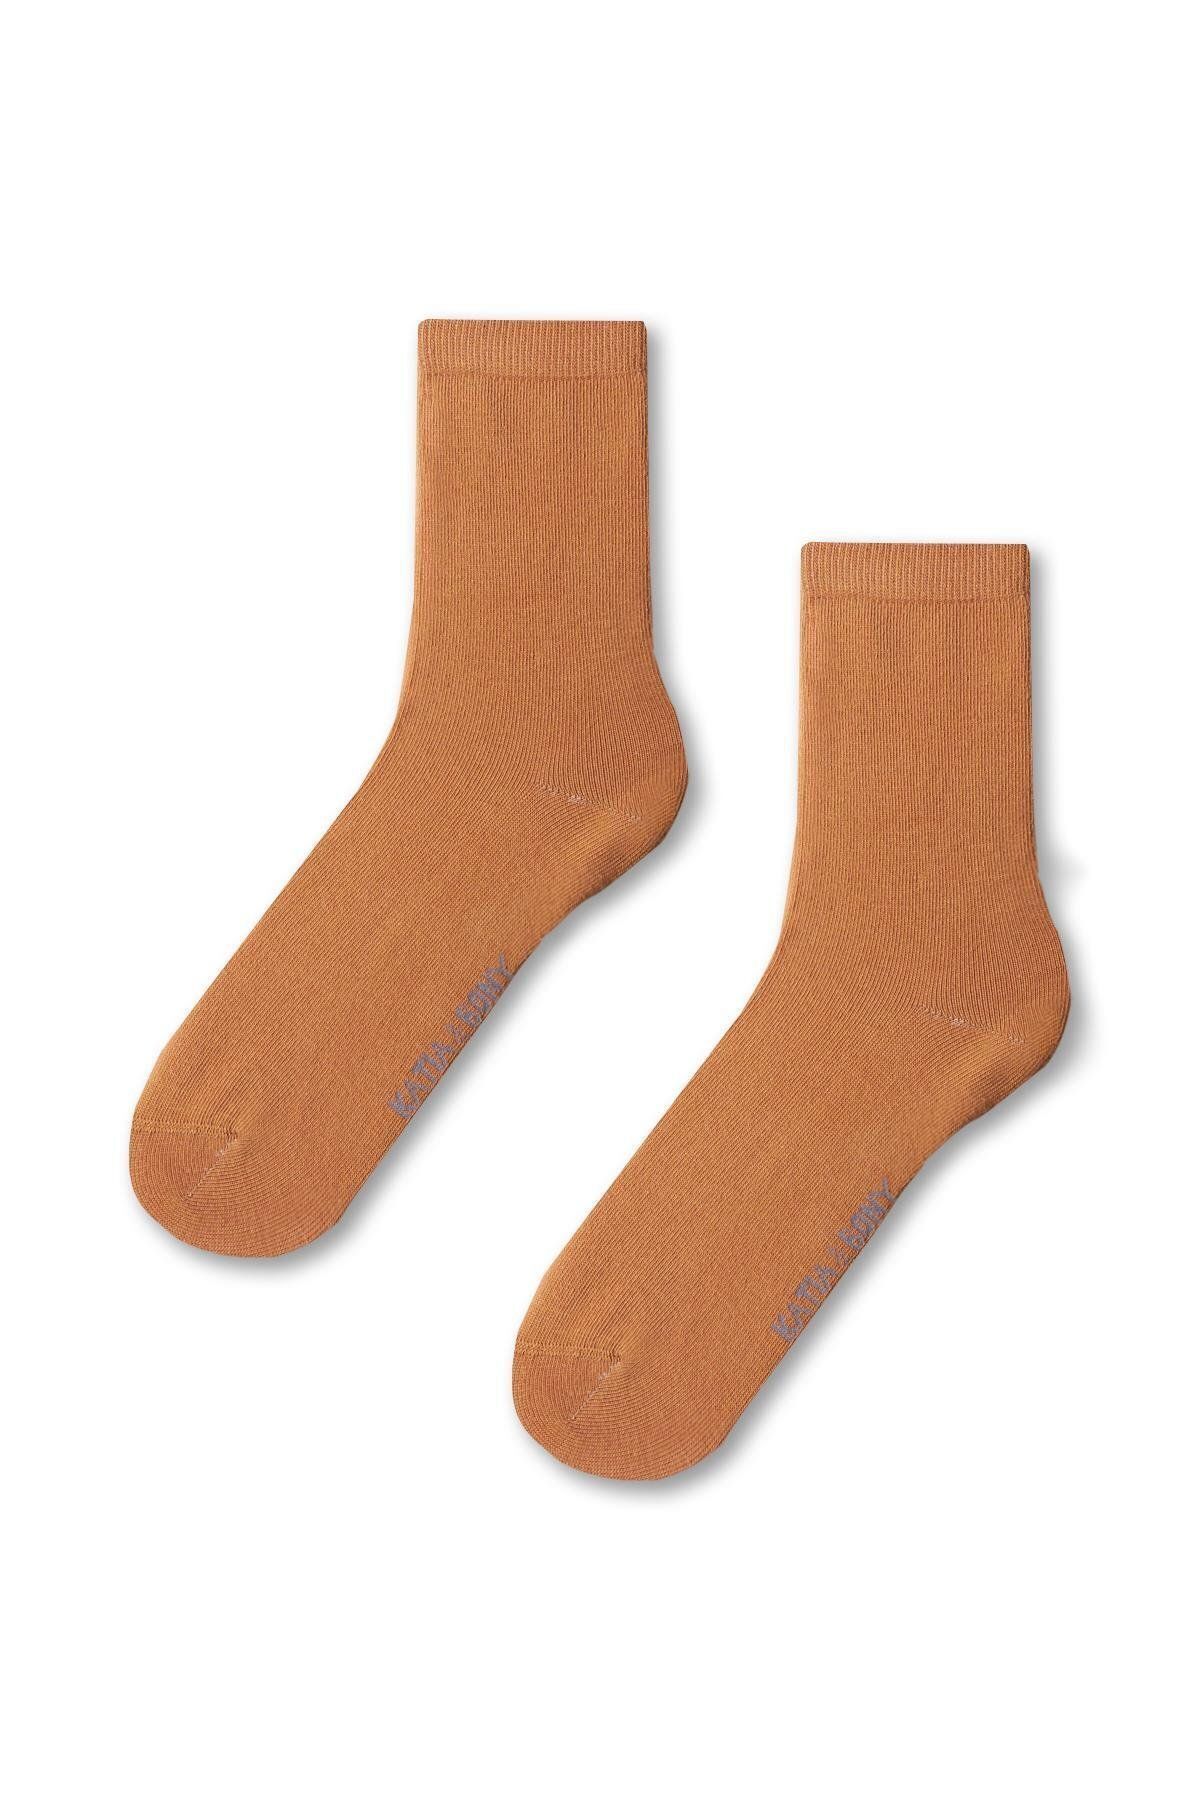 Katia & Bony Kadın Family Basic Soket Çorap Koyu Bej